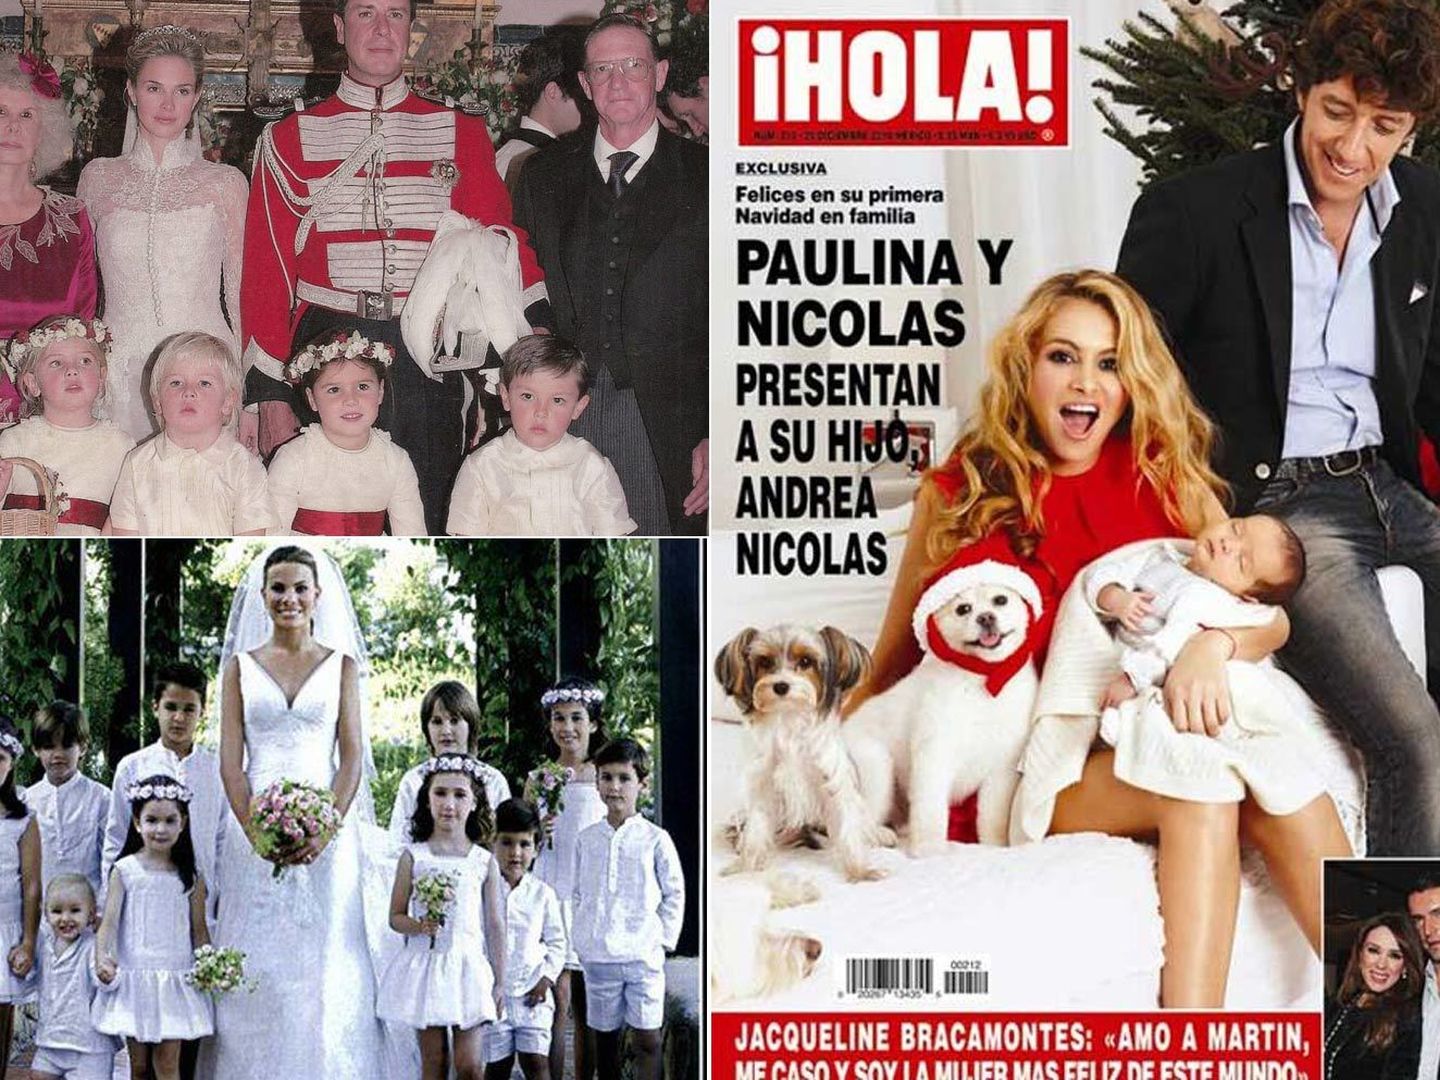 La boda de Cayetano, Carla Goyanes y Paulina en 'Hola' con ropa de La Oca Loca